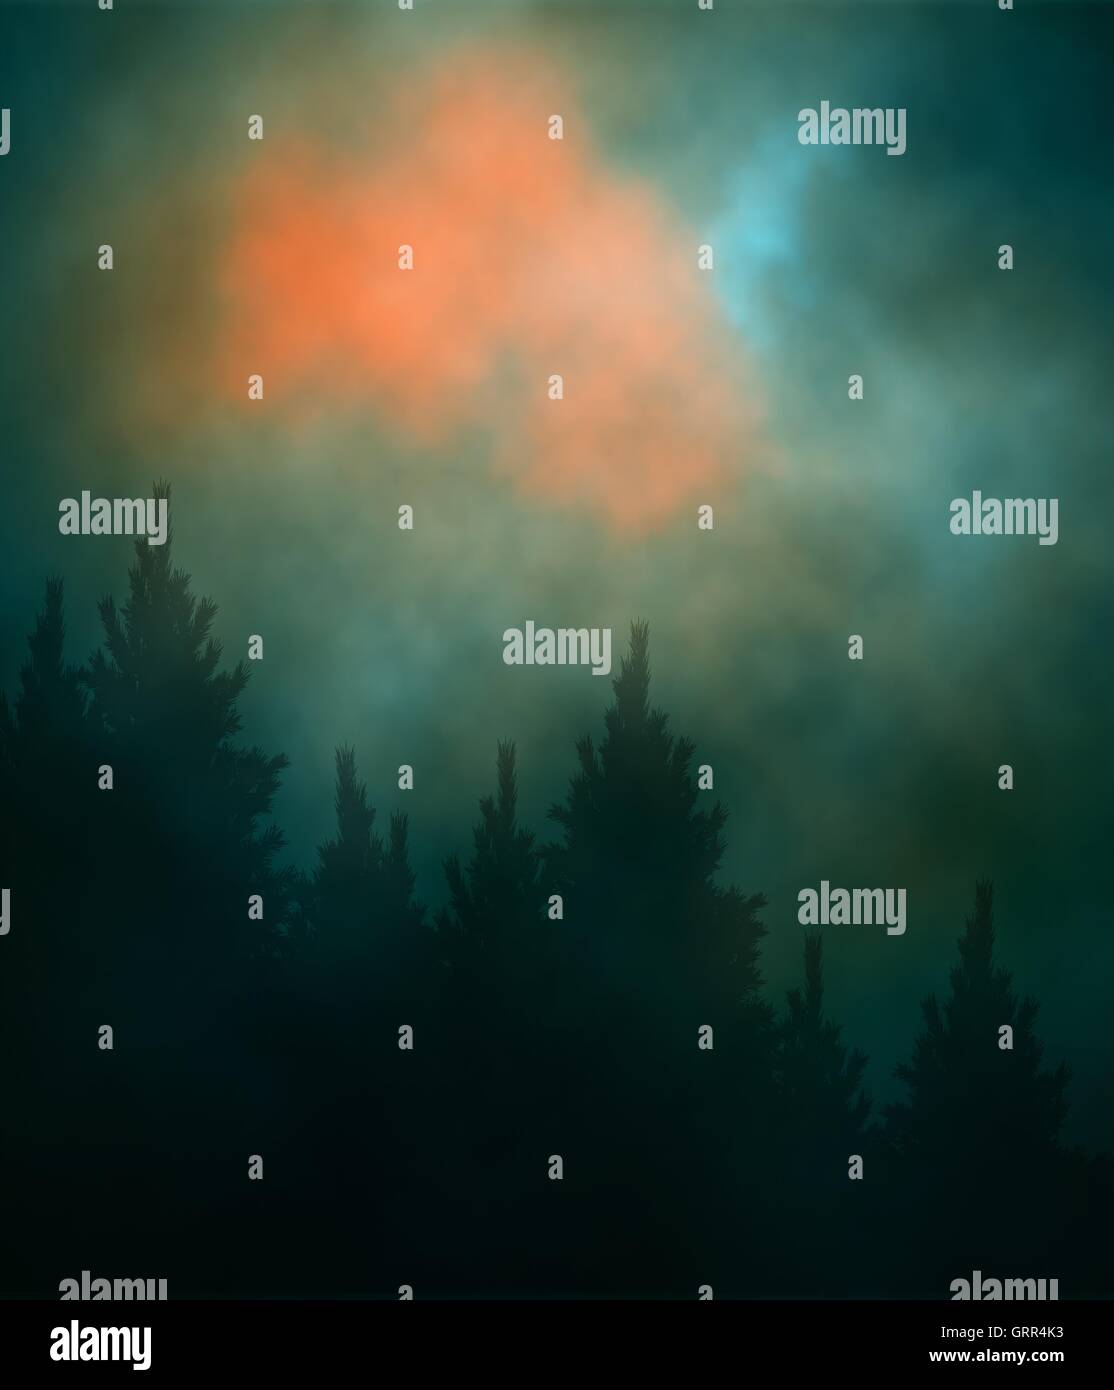 Editierbare Vektor-Illustration von einem bewölkten Abendhimmel über einen Nadelwald mit Farbverlauf Netze erstellt Stock Vektor